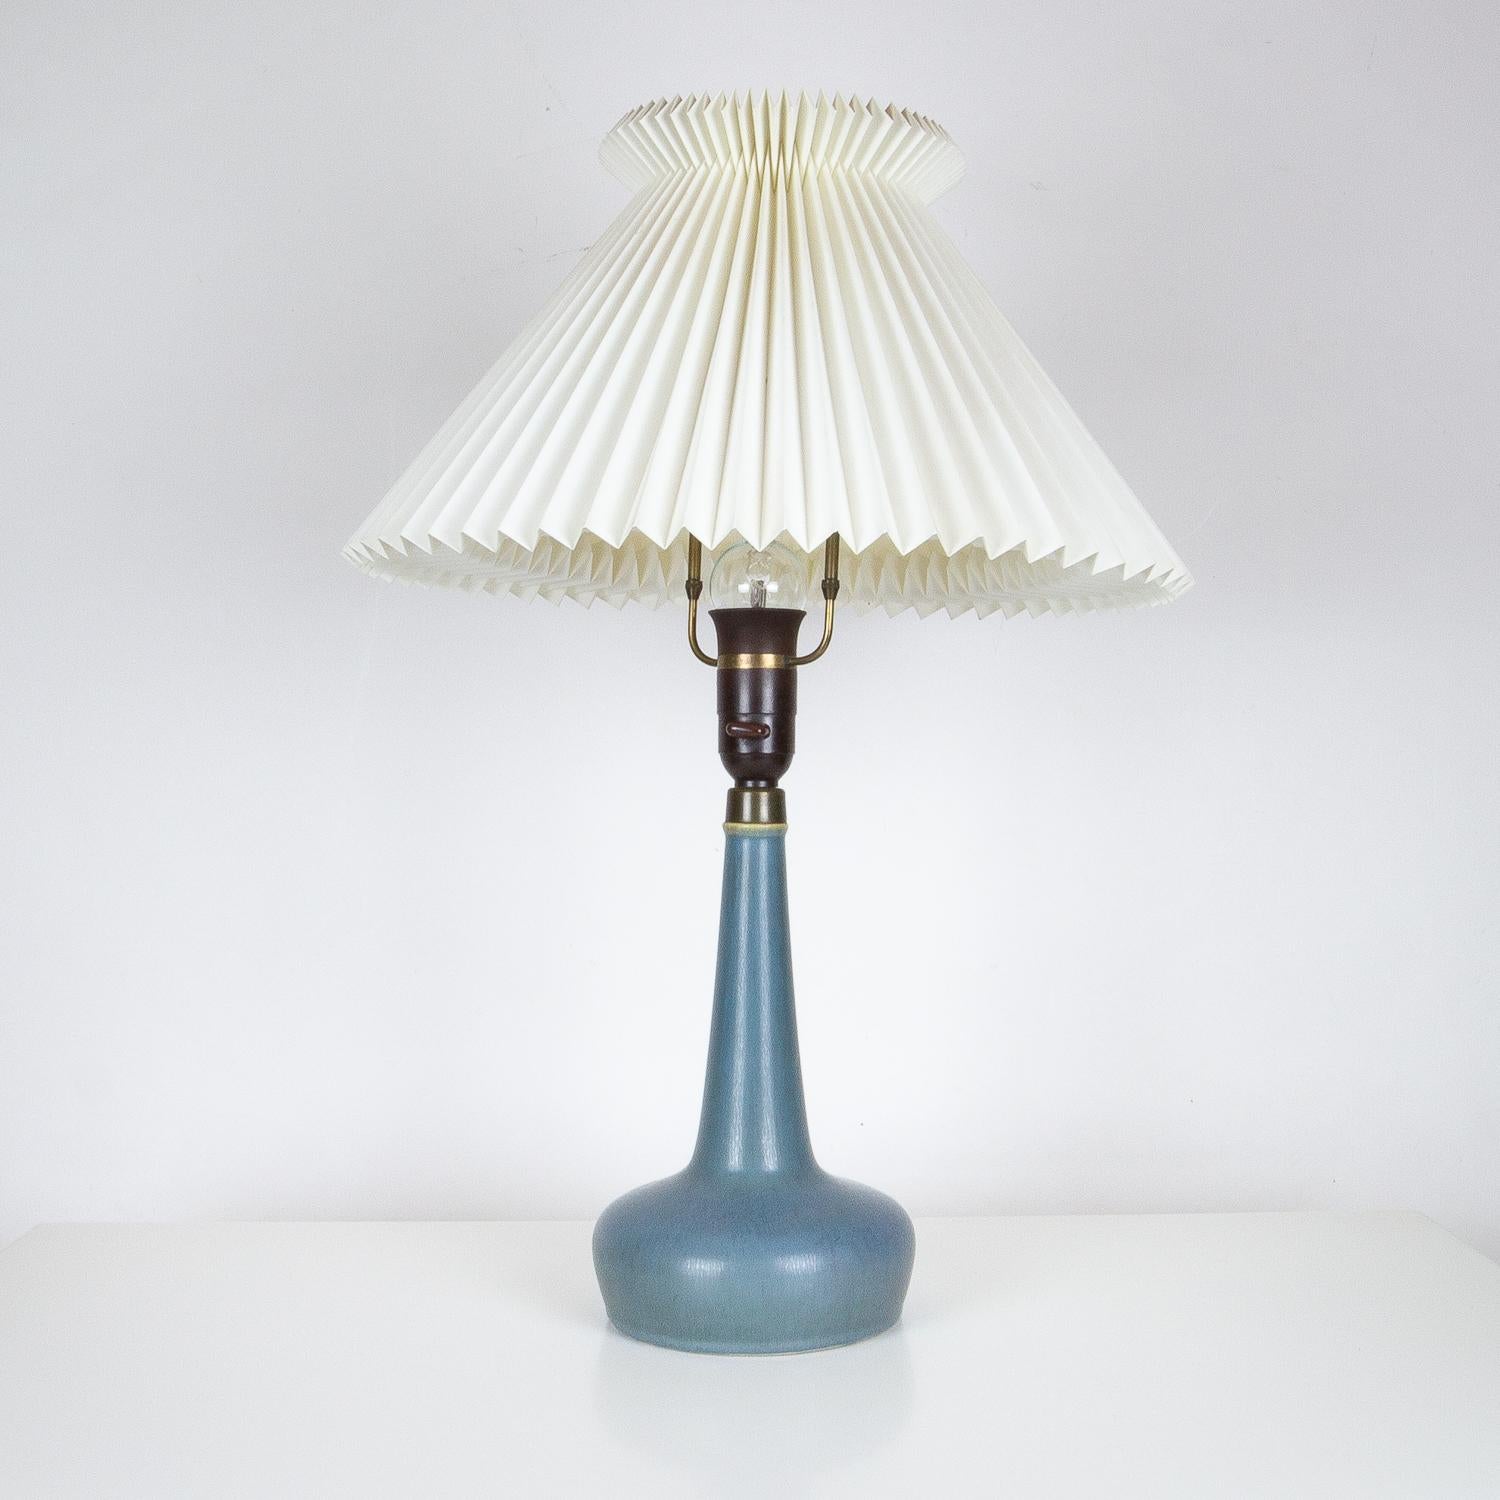 Danish Very Rare Model 311 Table Lamp by Esben Klint & Palshus for Le Klint, Denmark